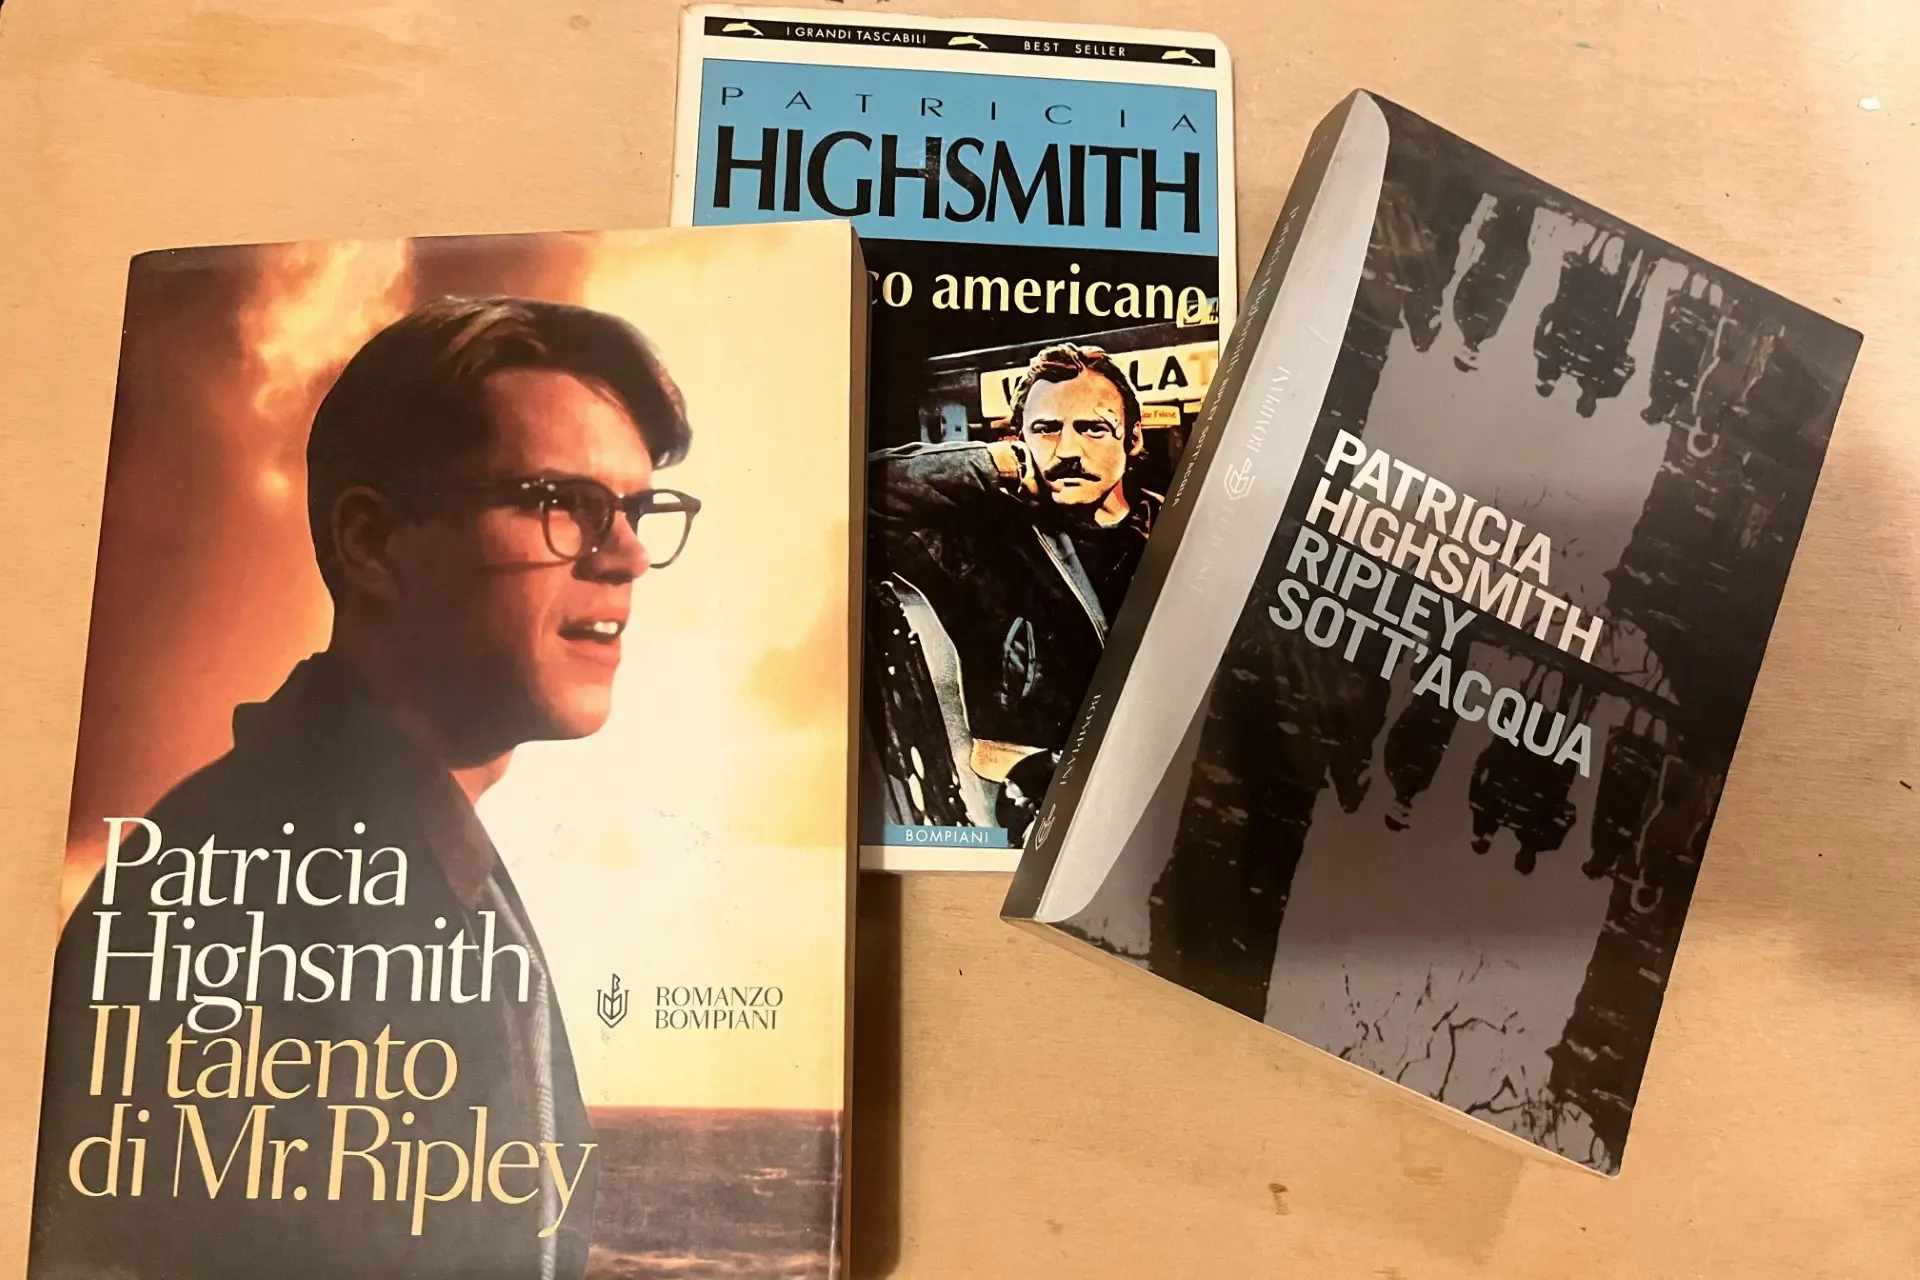 I romanzi di Patricia Highsmith con protagonista Tom Ripley